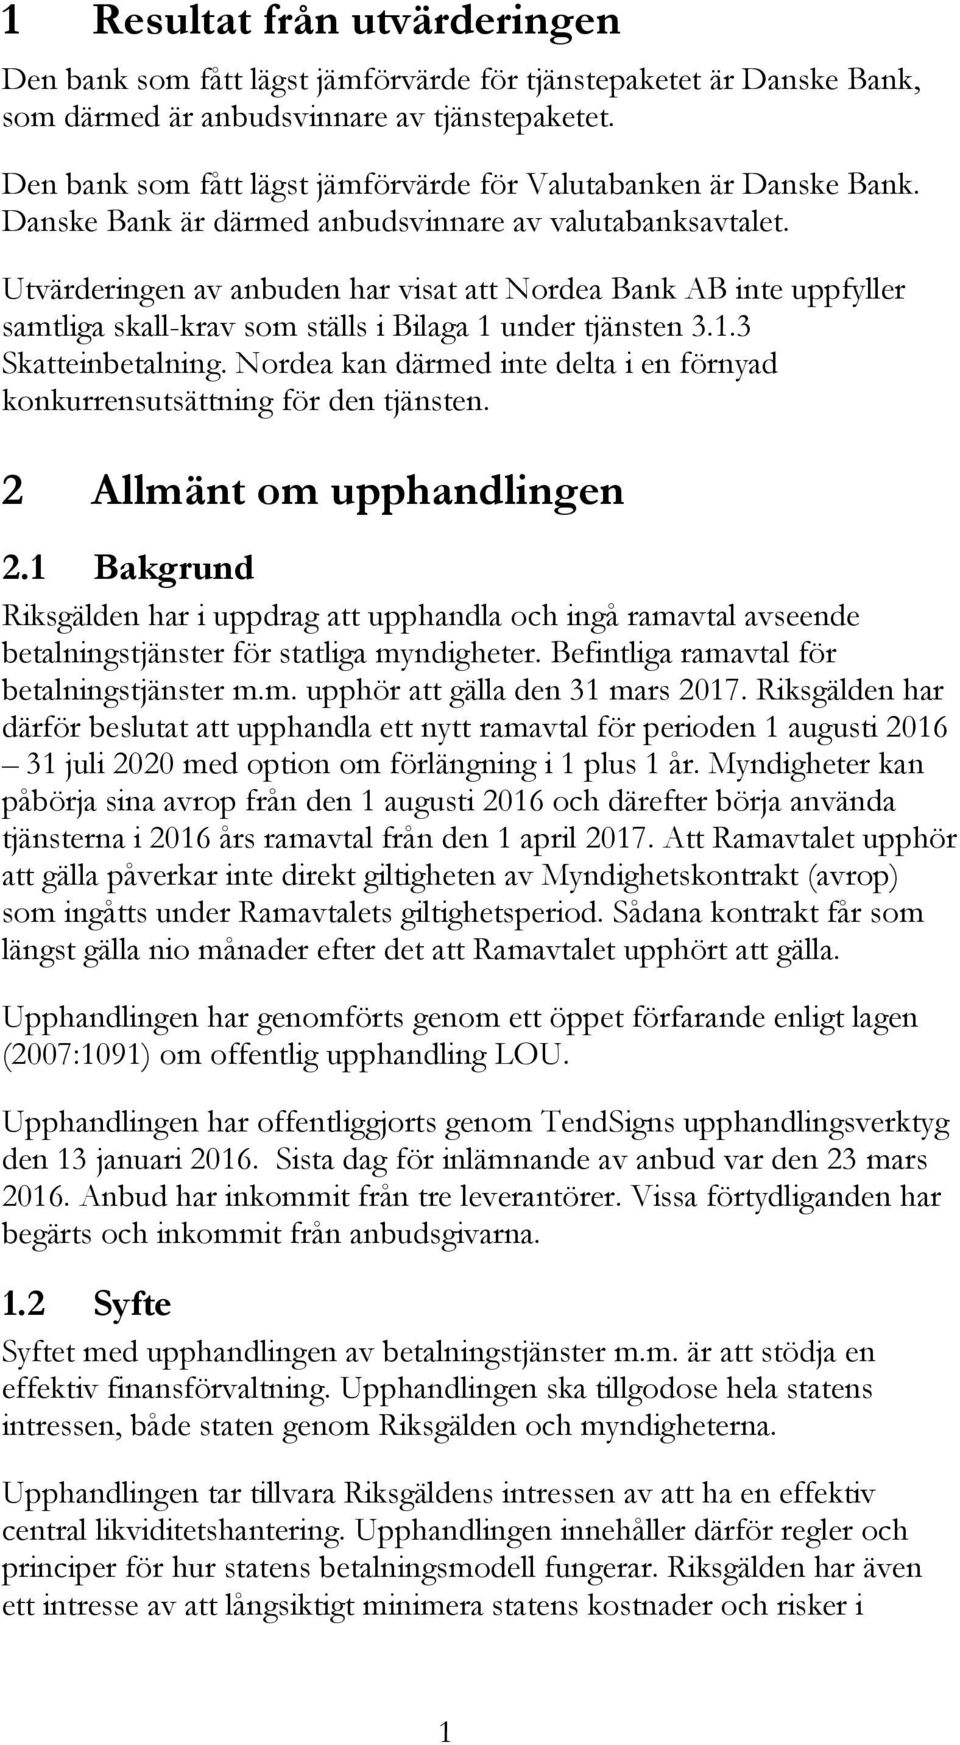 Utvärderingen av anbuden har visat att Nordea Bank AB inte uppfyller samtliga skall-krav som ställs i Bilaga 1 under tjänsten 3.1.3 Skatteinbetalning.